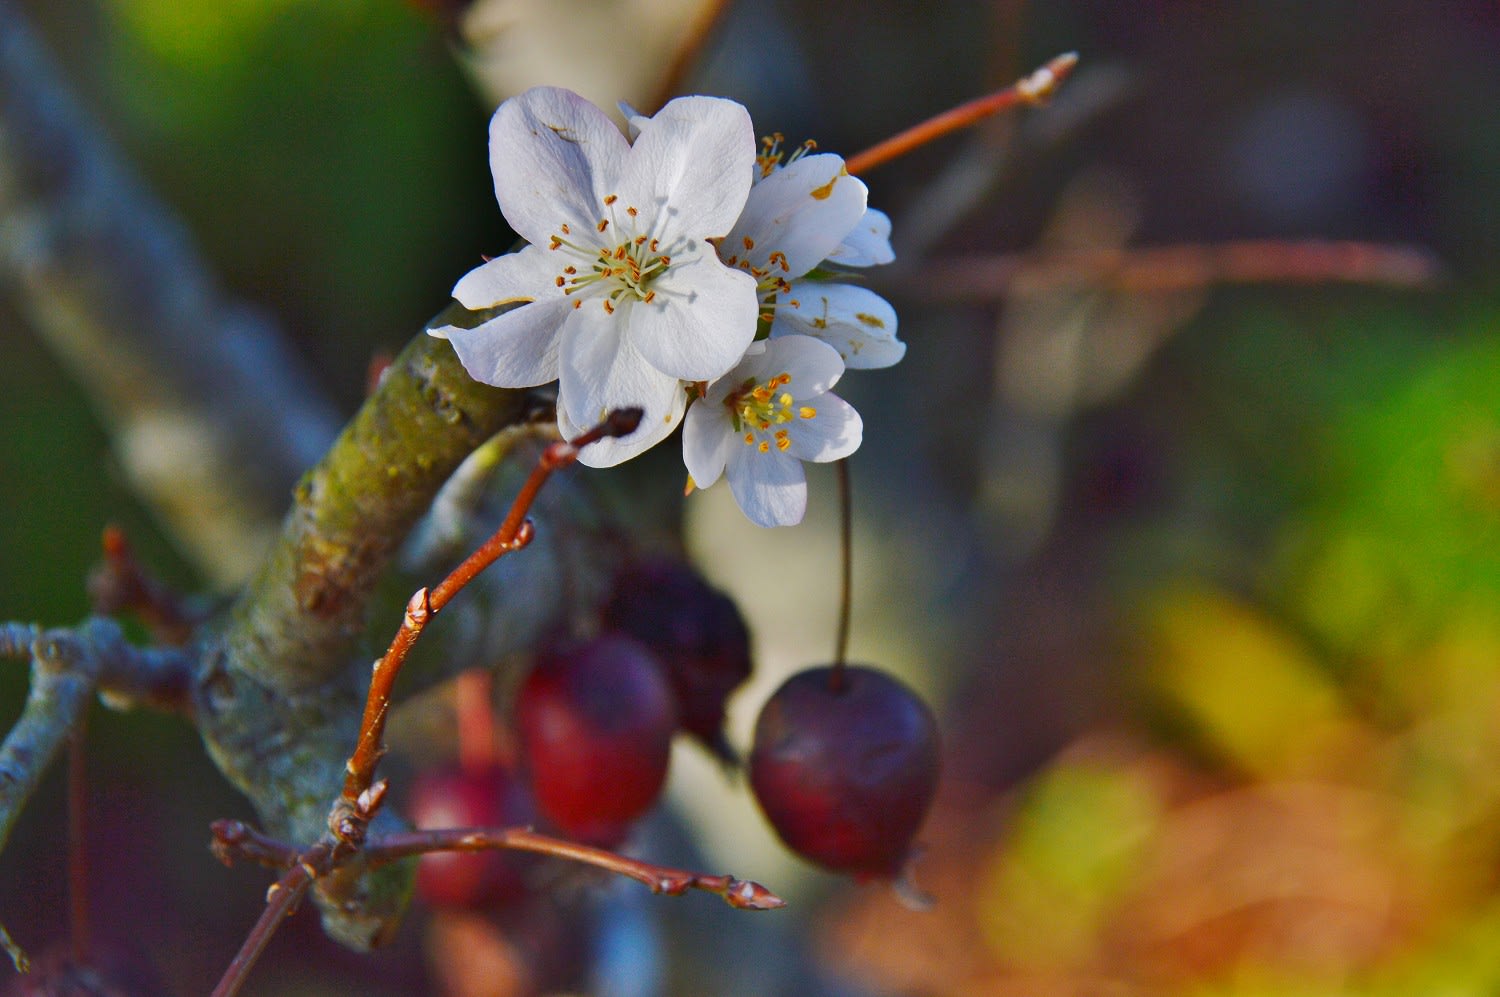 リンゴの花の狂い咲き 館蔭の杜 を眺めつ つれづれに